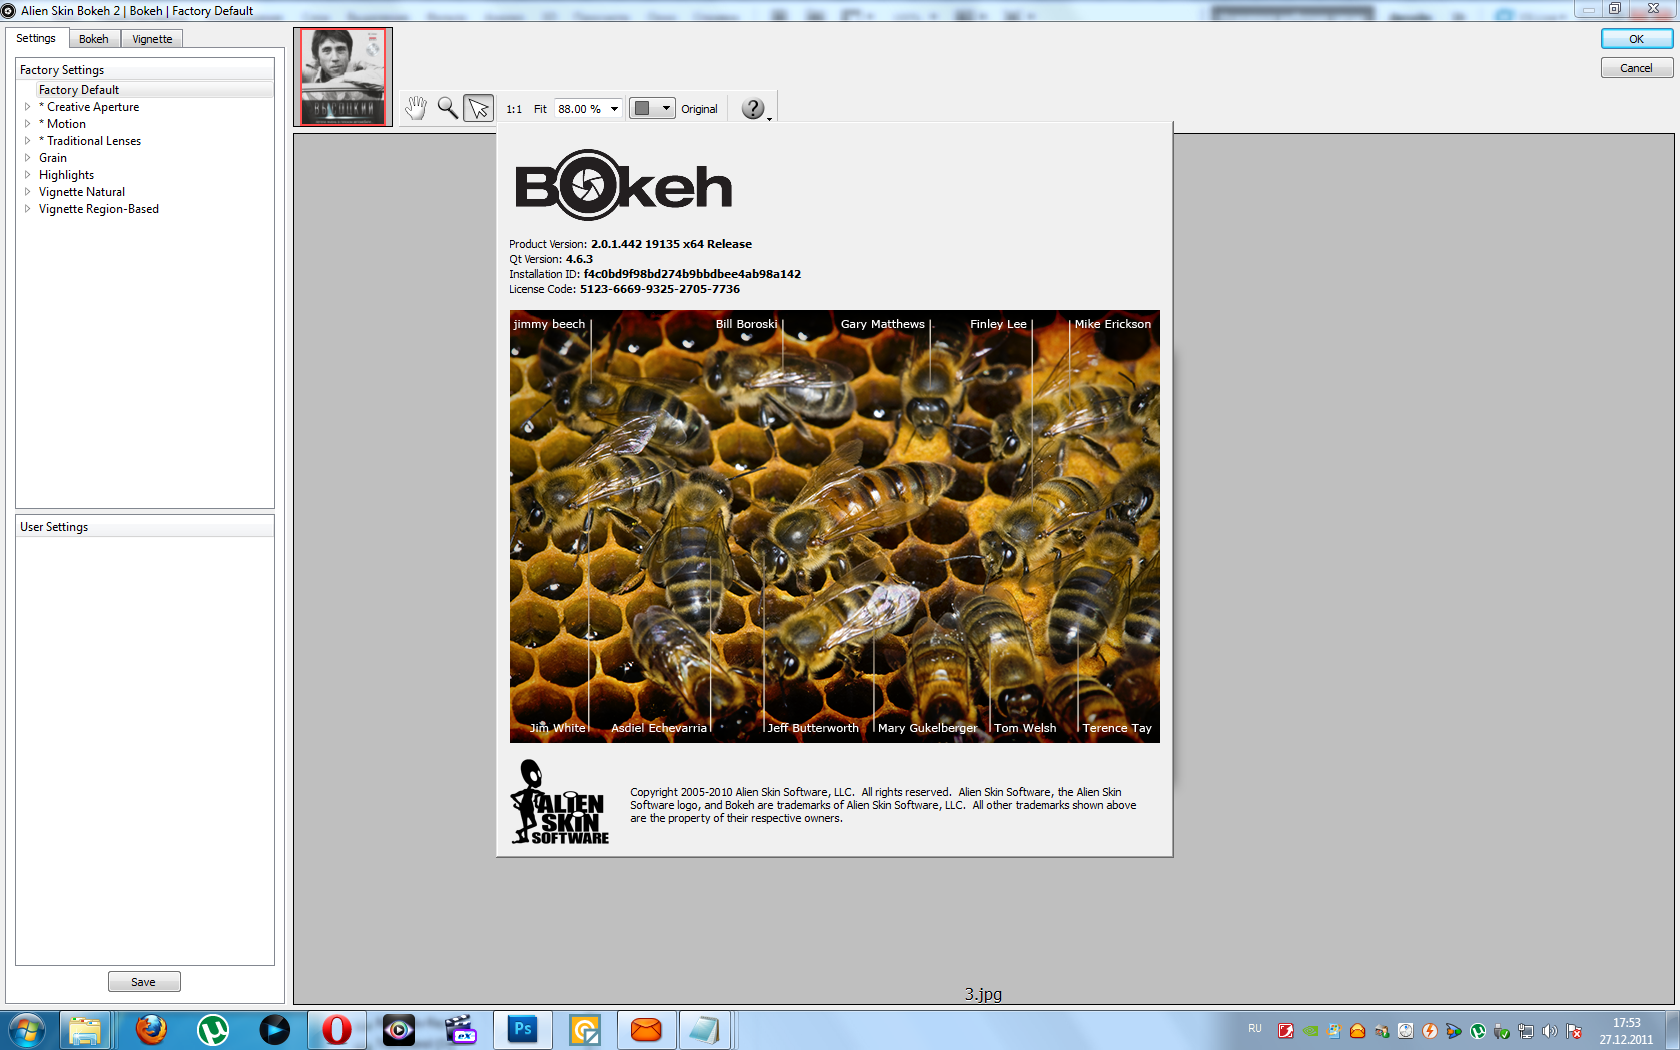 Alien Skin Software Photo Bundle скачать бесплатно - сборник графических фильтров для Photoshop